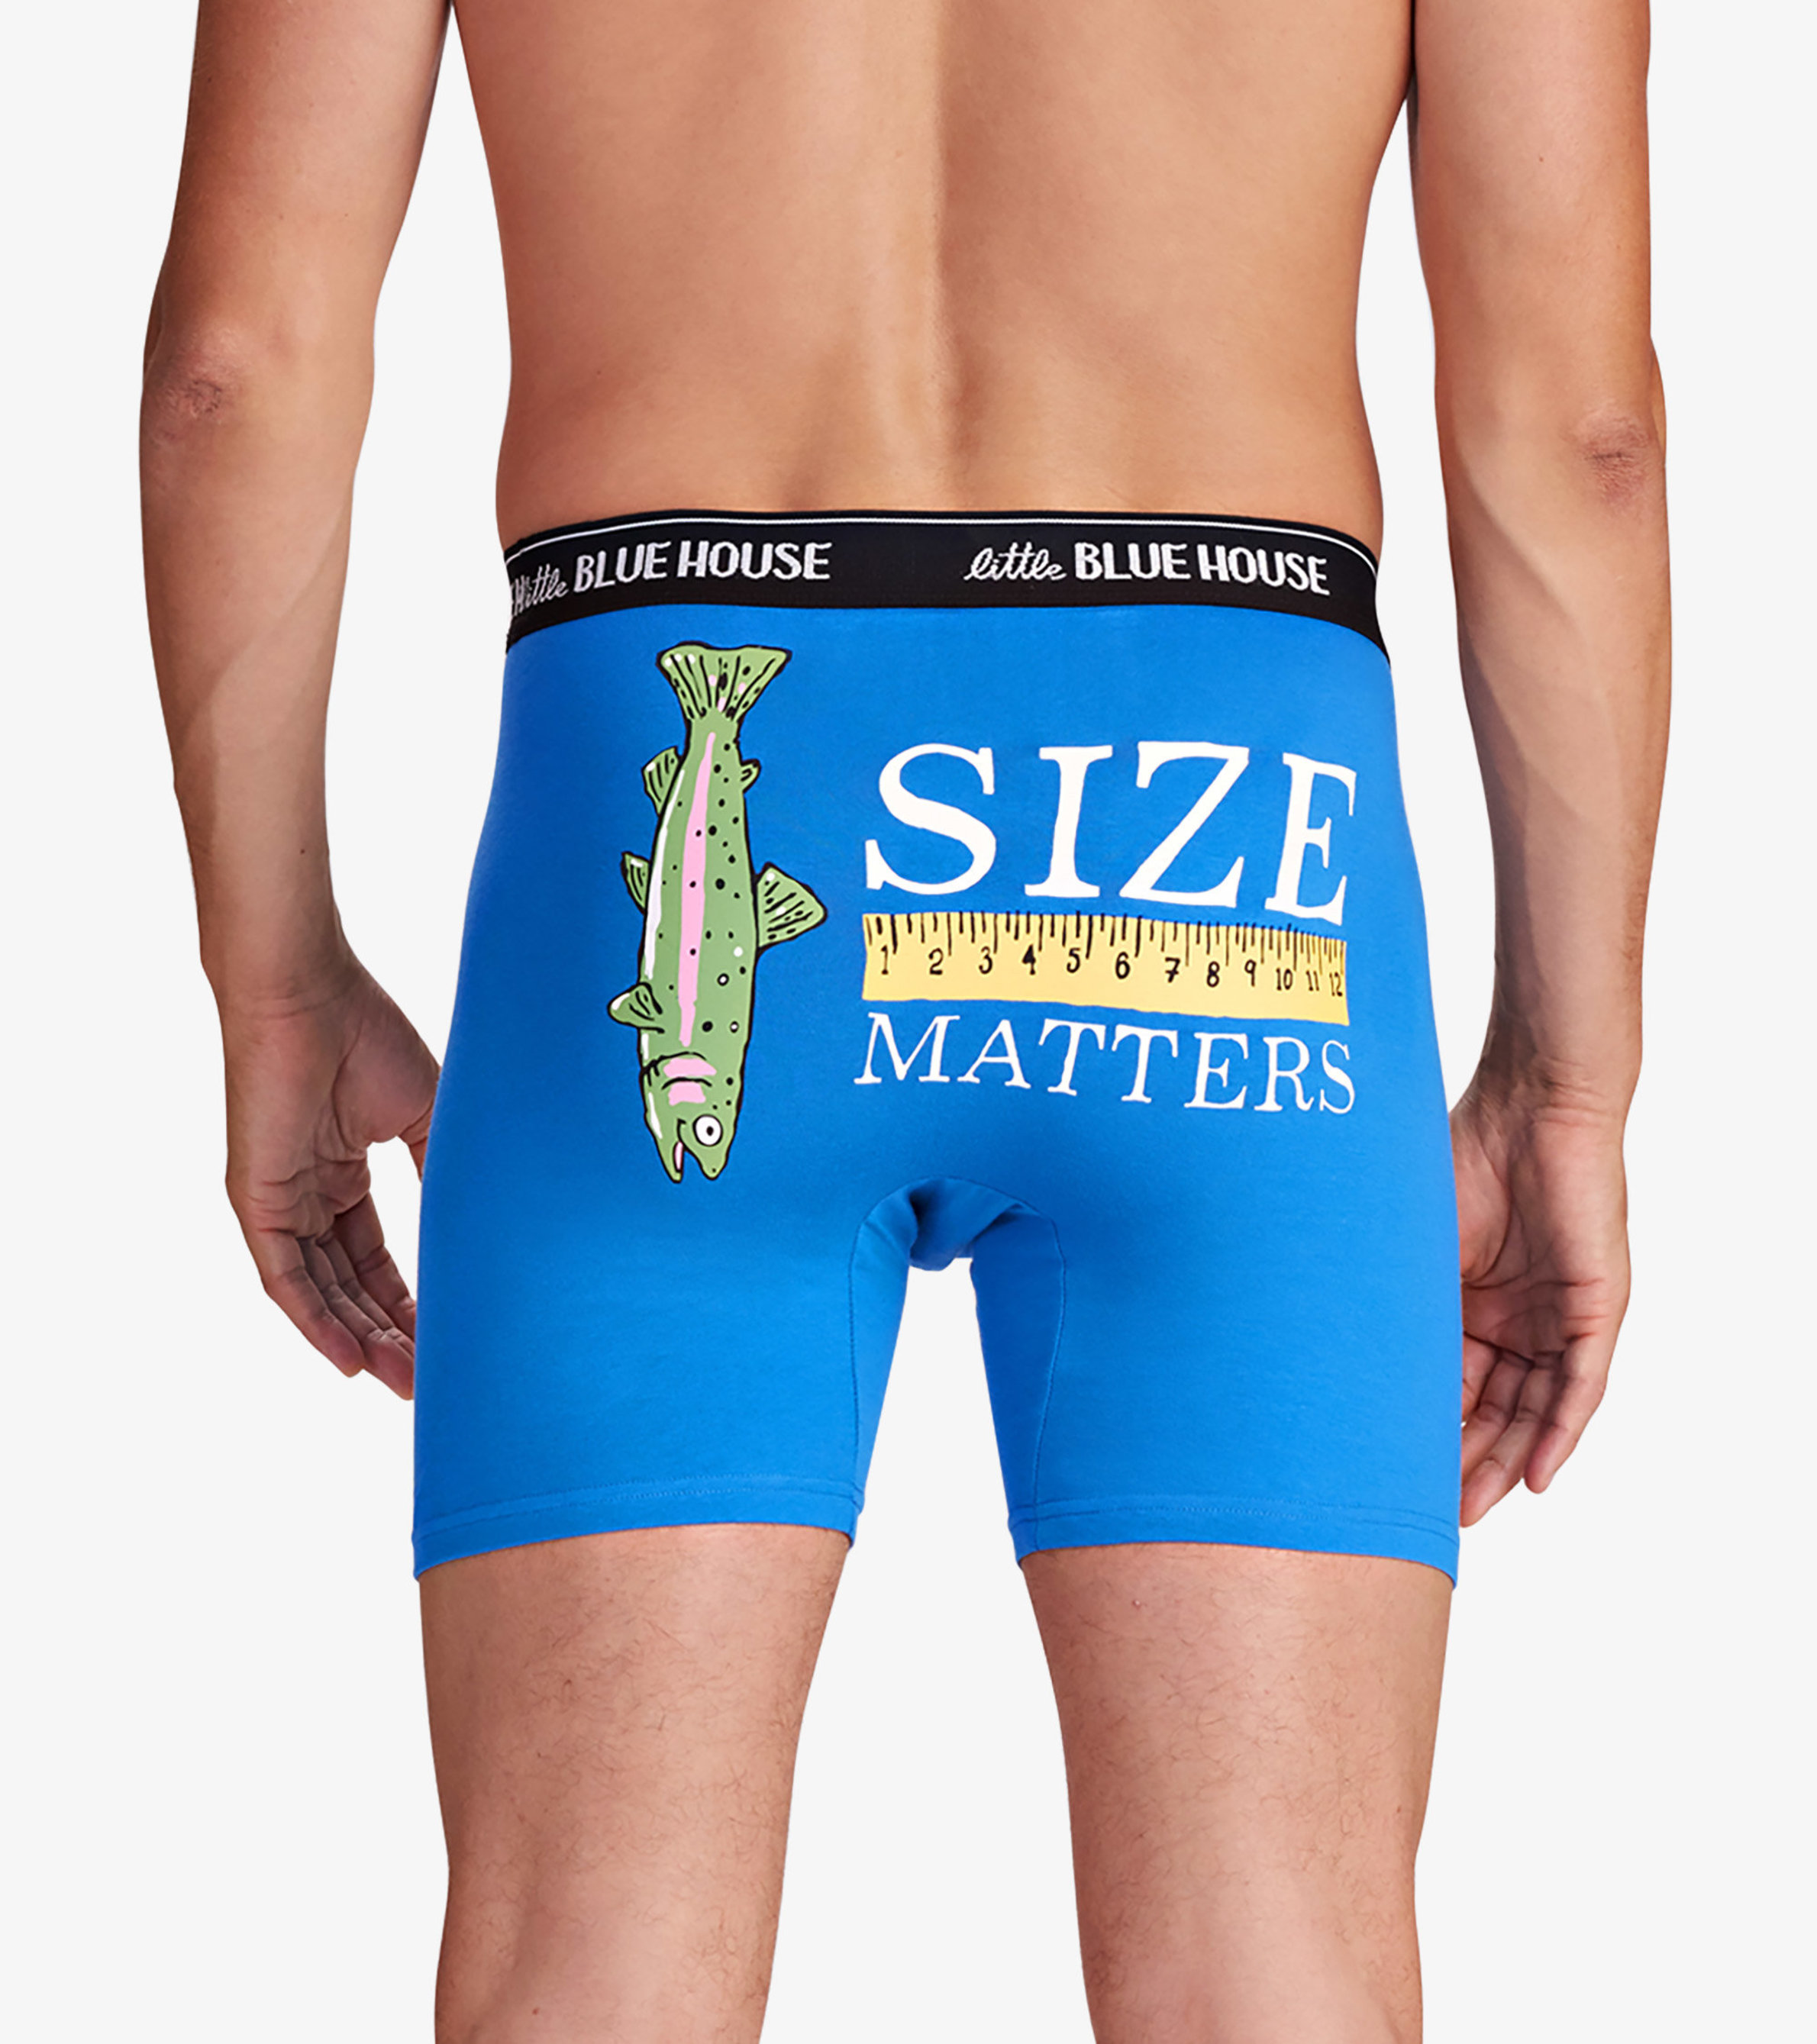 Men's Underwear: Average savings of 47% at Sierra